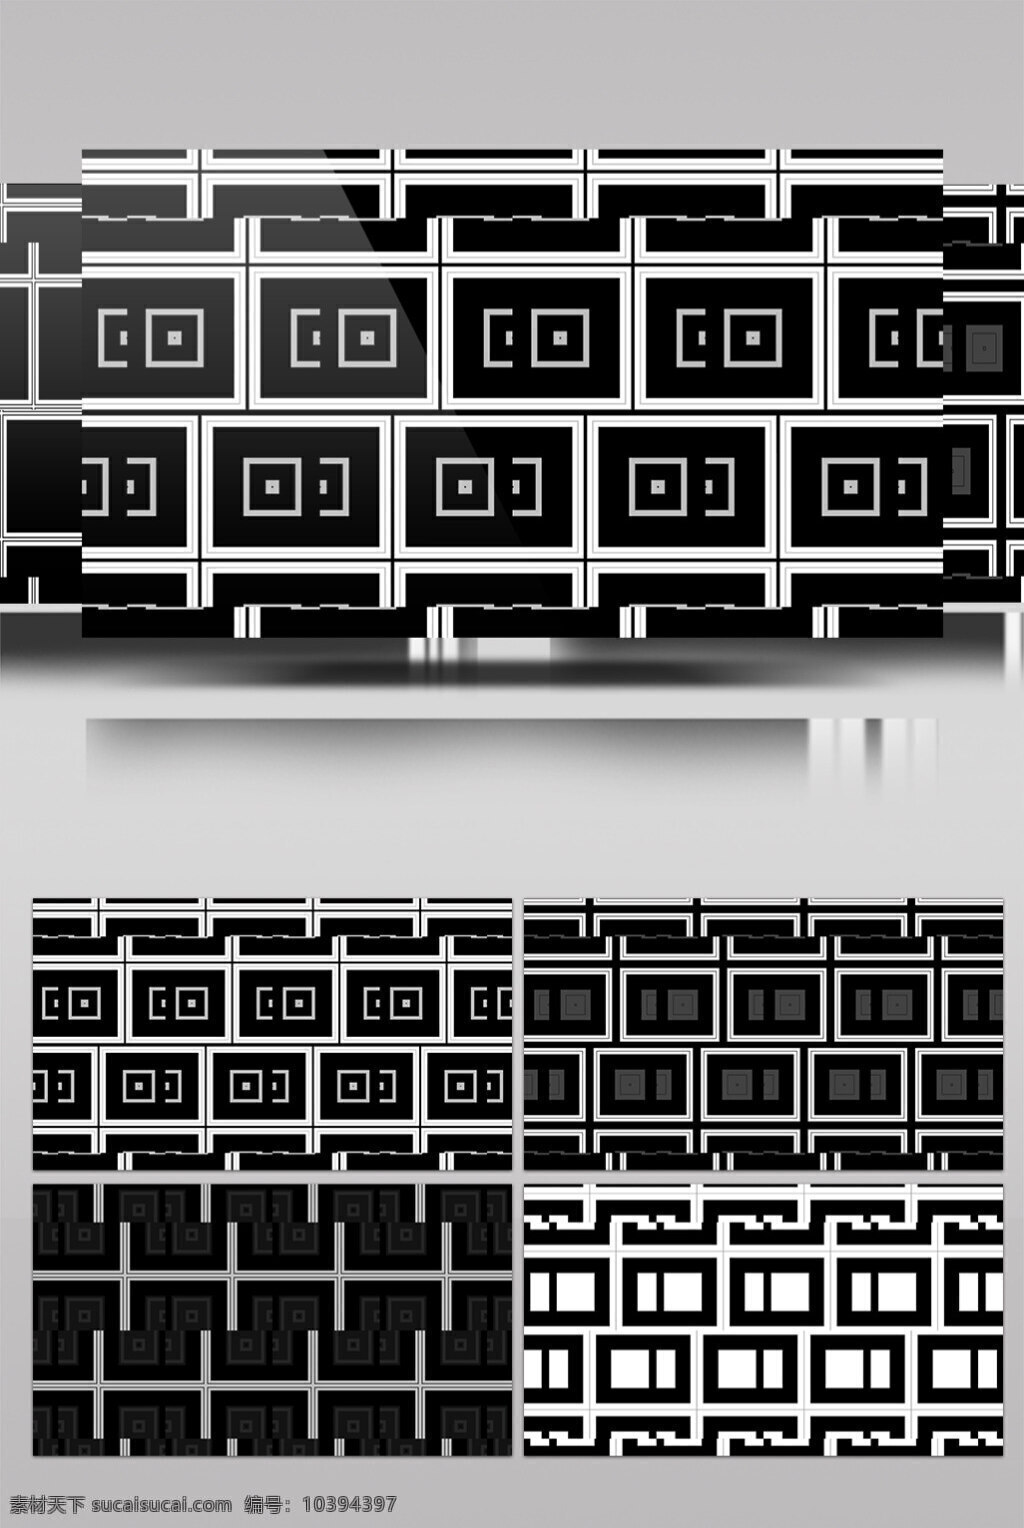 黑白 迷宫 视频 黑白迷宫 回形光格 视觉享受 手机壁纸 电脑屏幕保护 高清视频素材 3d视频素材 特效视频素材